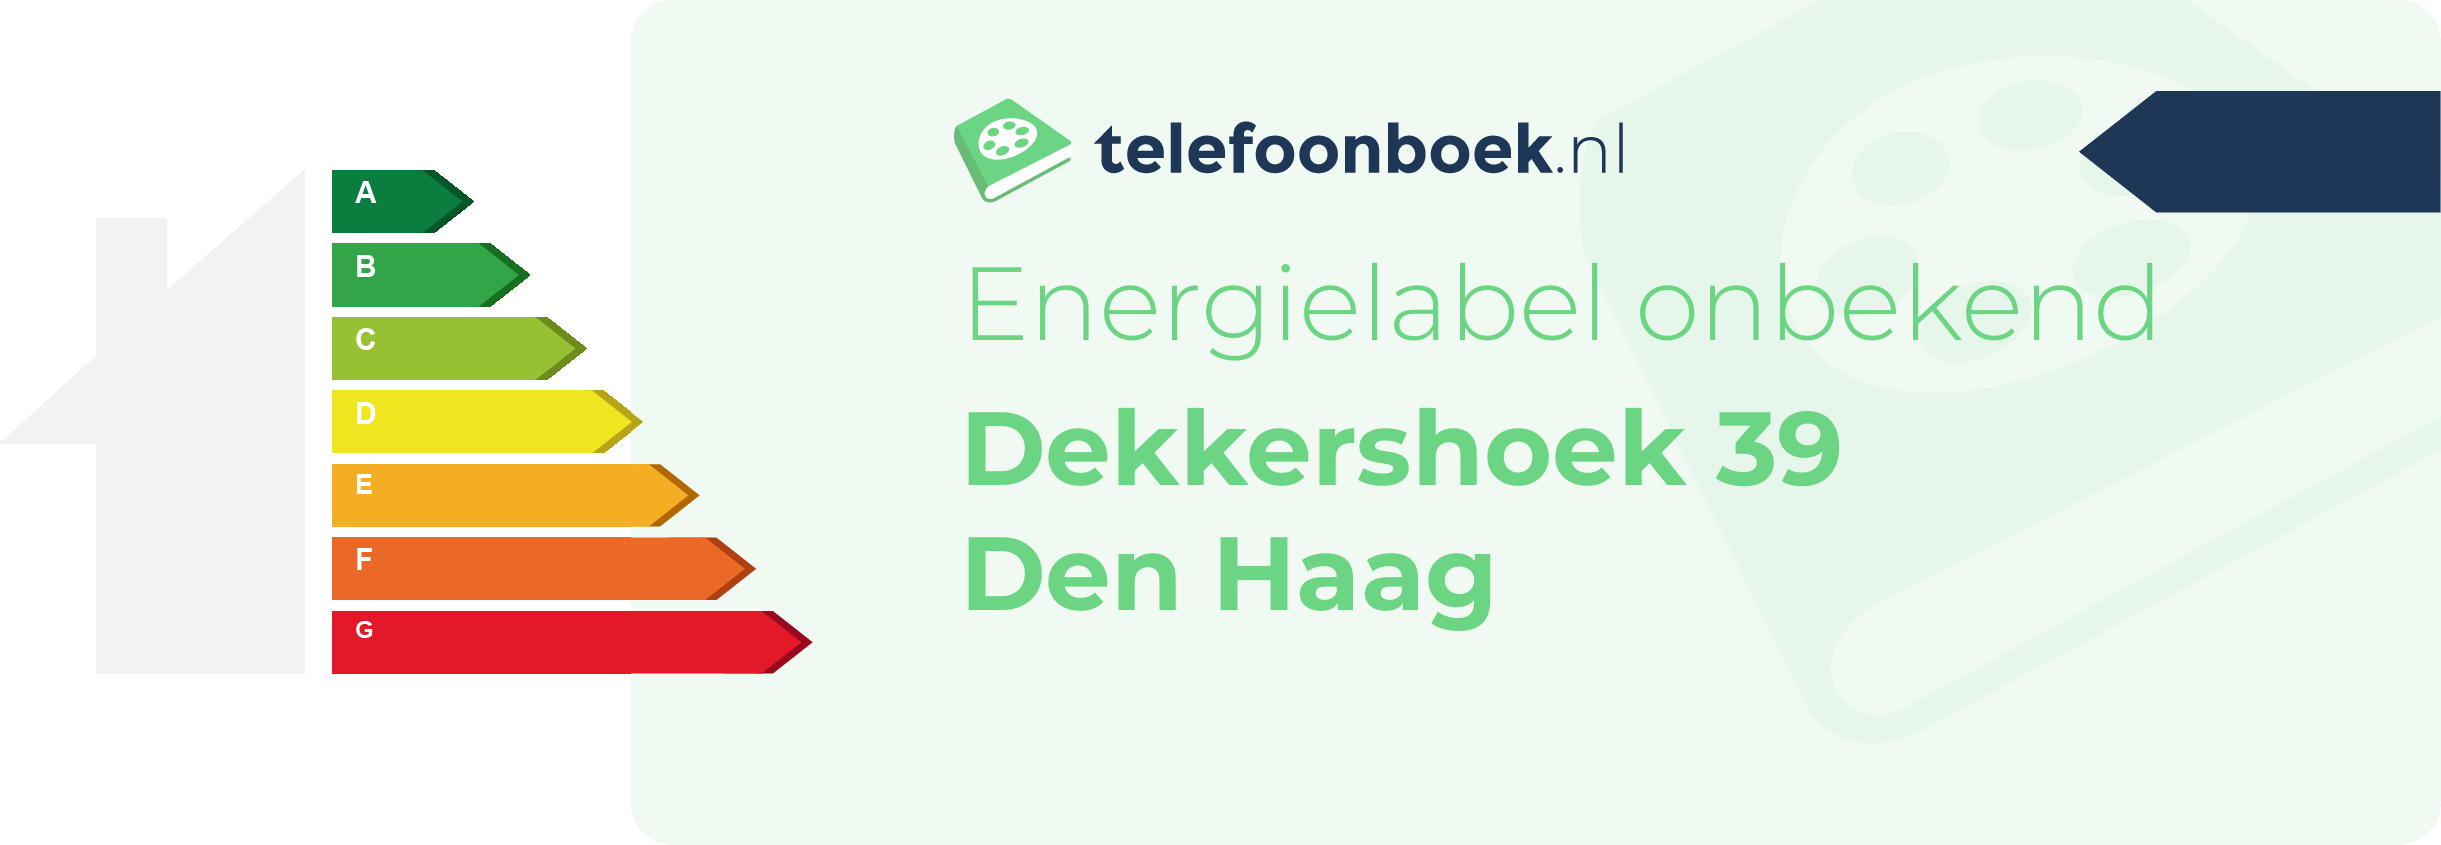 Energielabel Dekkershoek 39 Den Haag